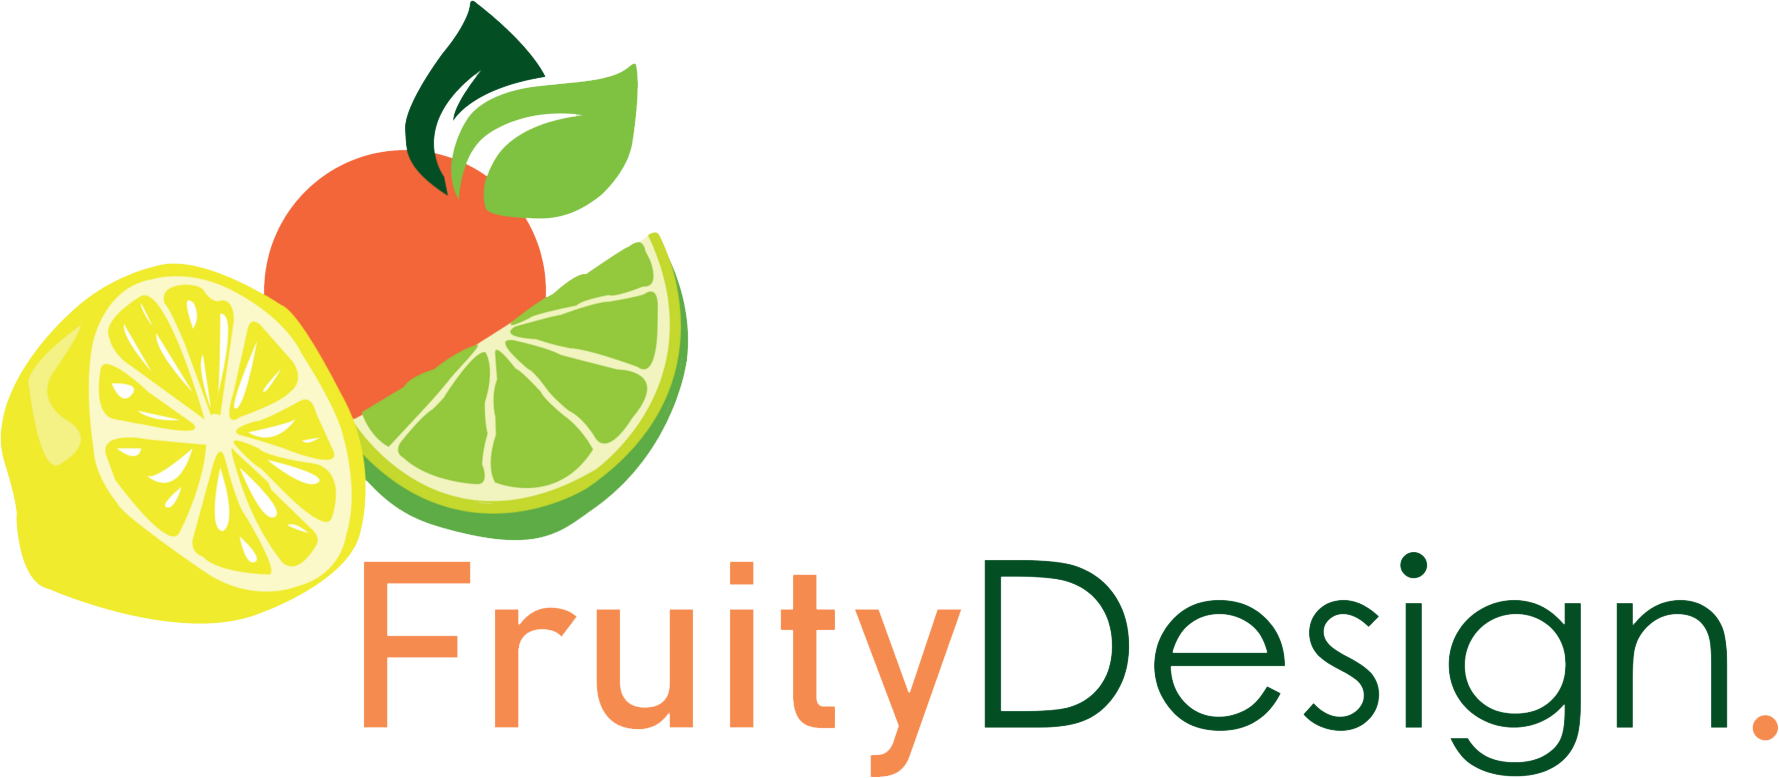 Fruity Design